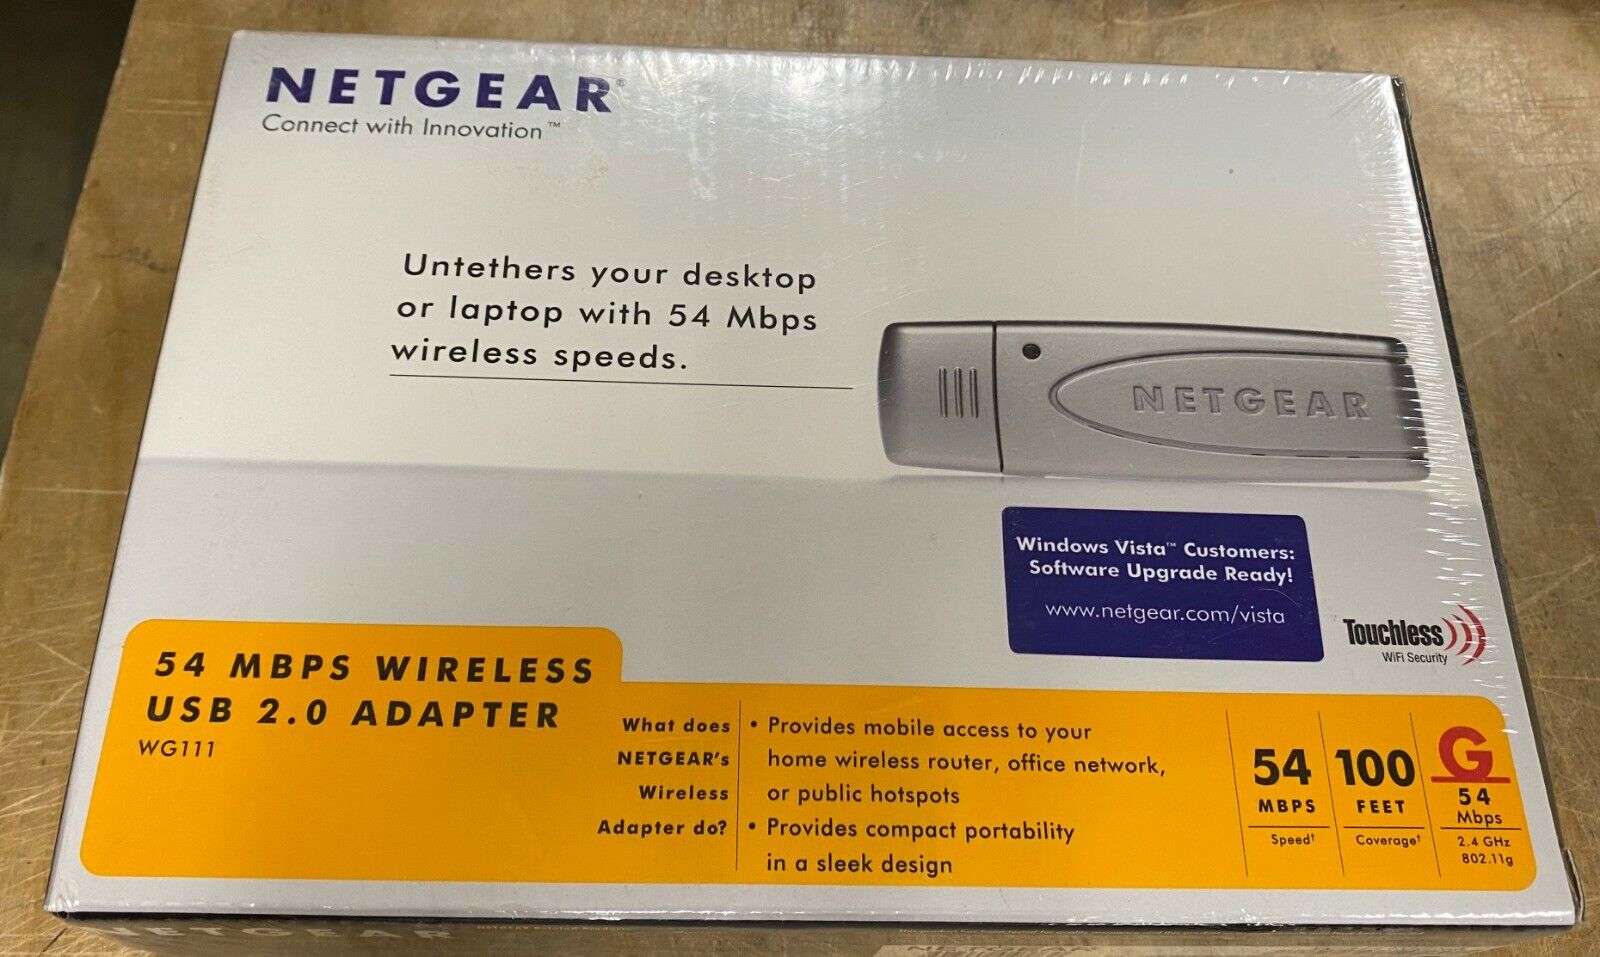 NETGEAR 54 MBPS WIRELESS USB 2.0 ADAPTER WG111 NEW IN SHRINKWRAP